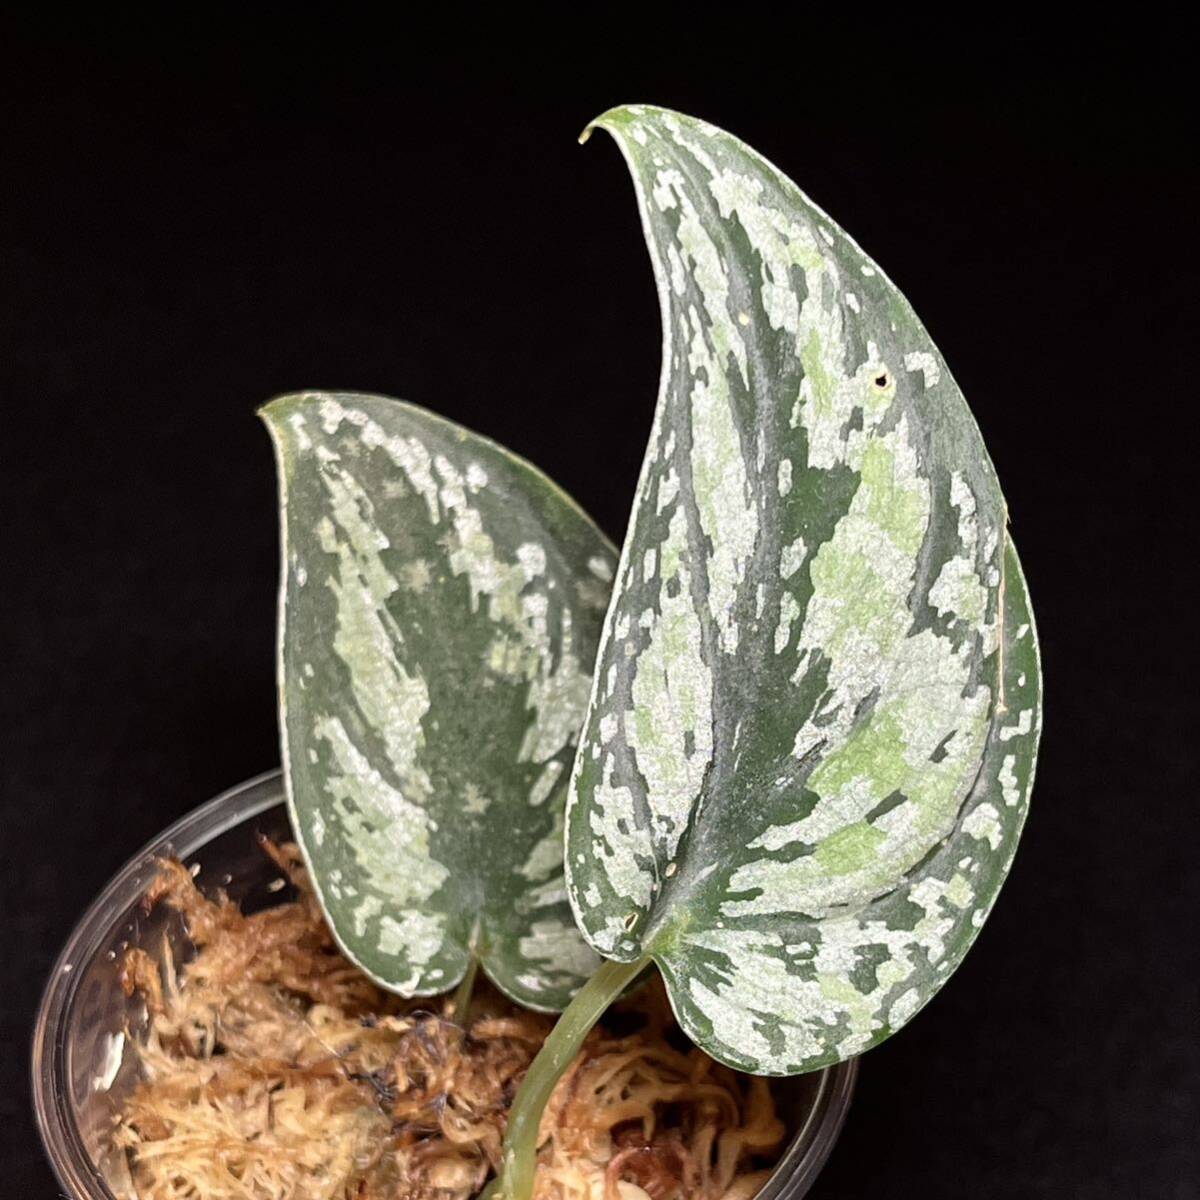 『希少』1. Scindapsus tricolor スキンダプサス トリカラー インドネシア輸入株 熱帯植物 希少種_画像1